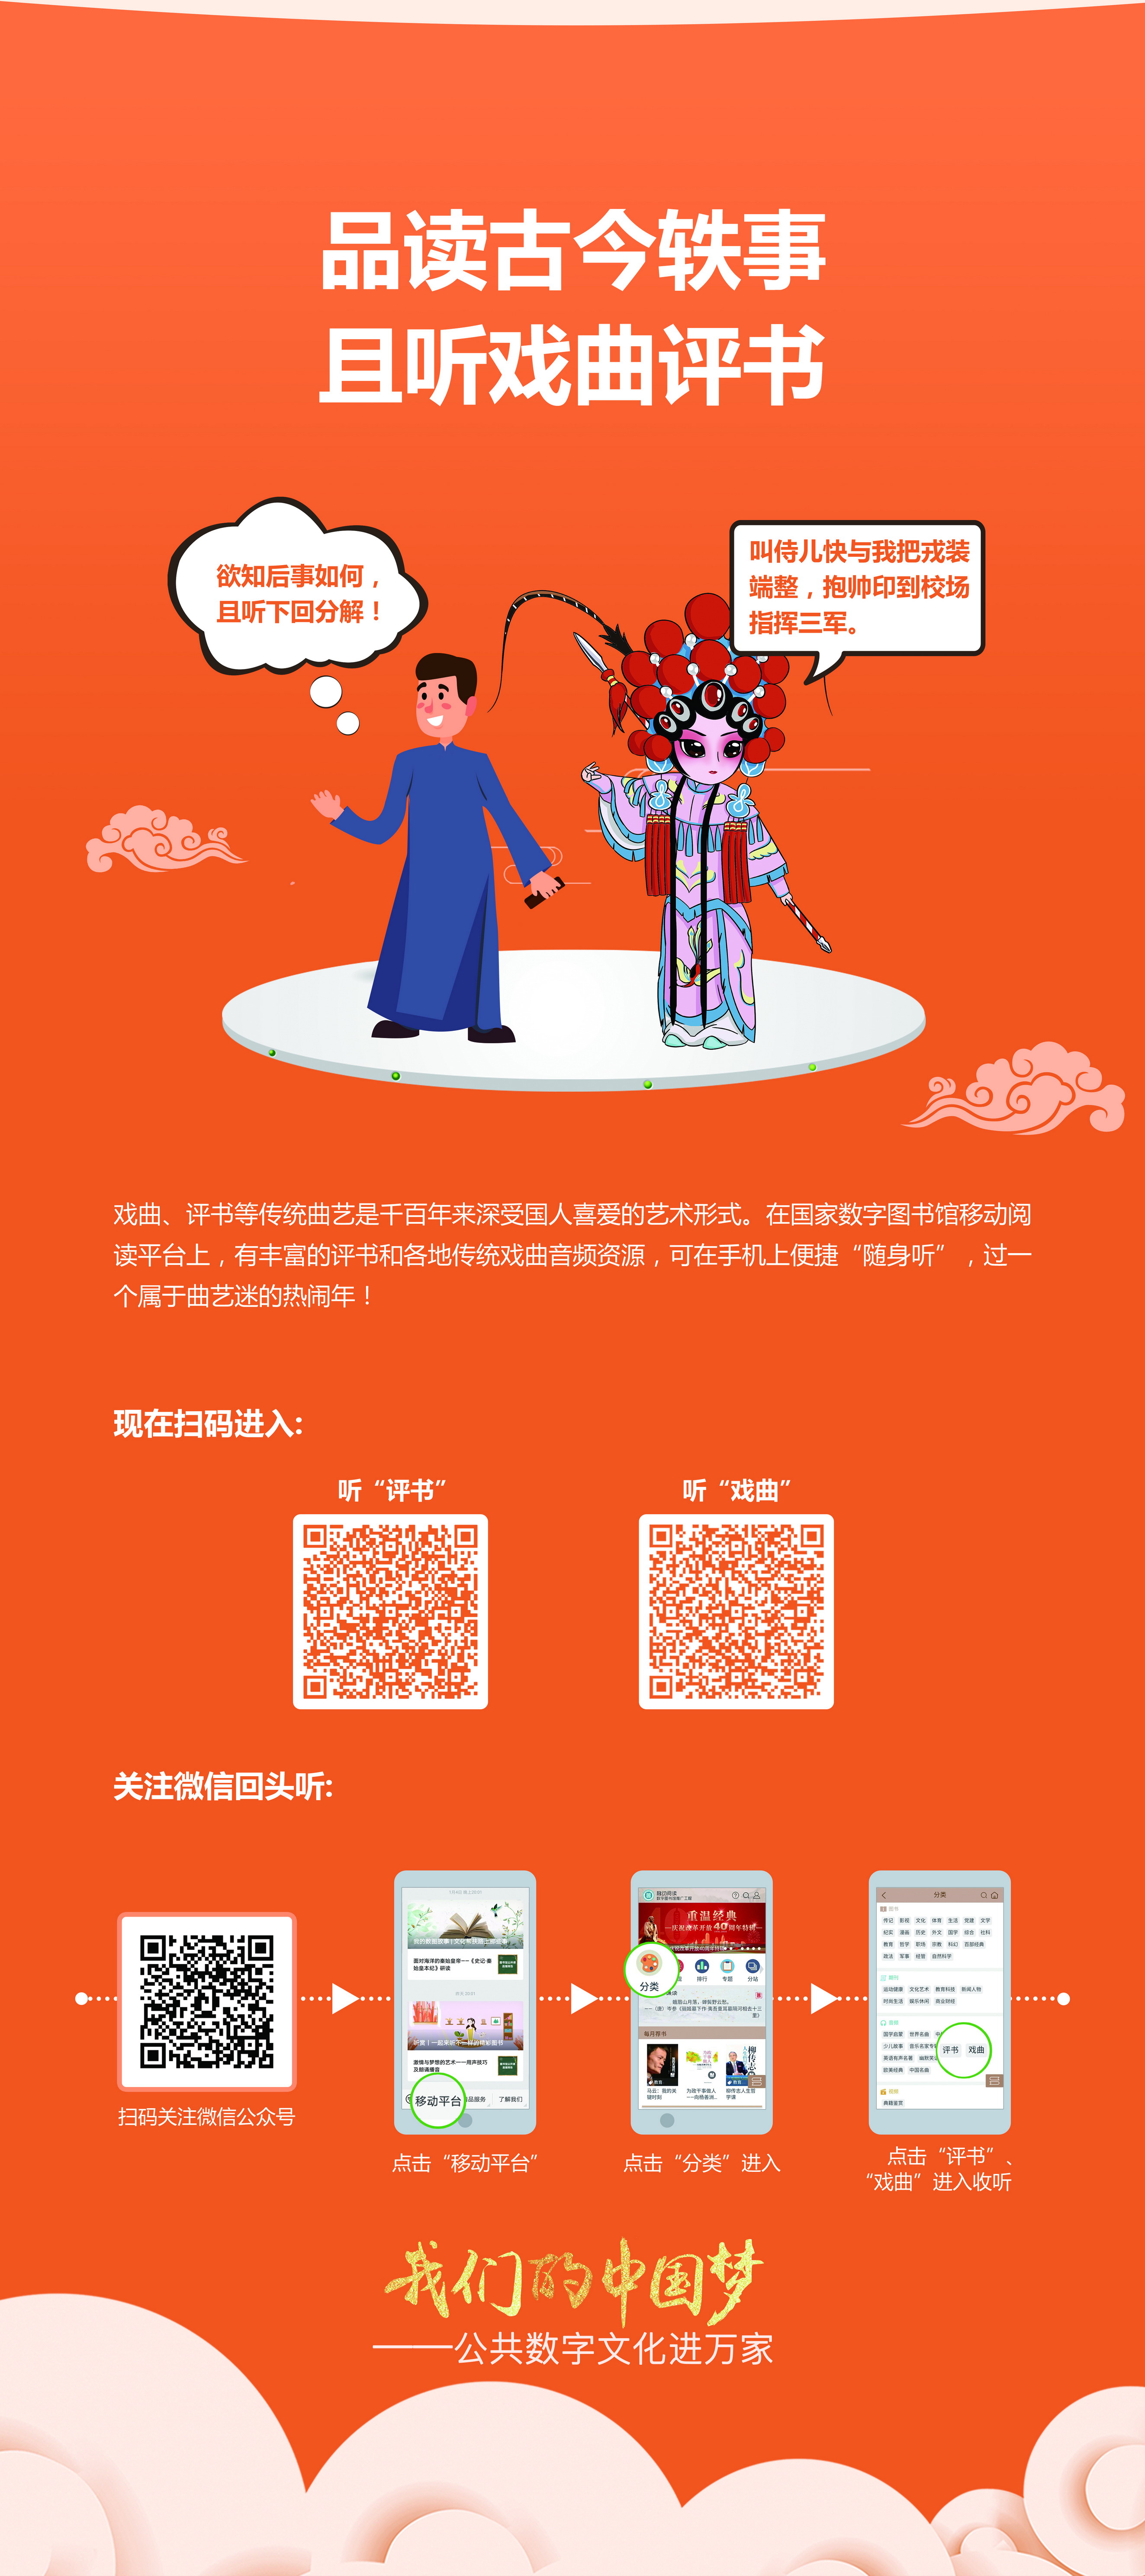 我们的中国梦——公共数字文化进万家活动线下主题展览_图8